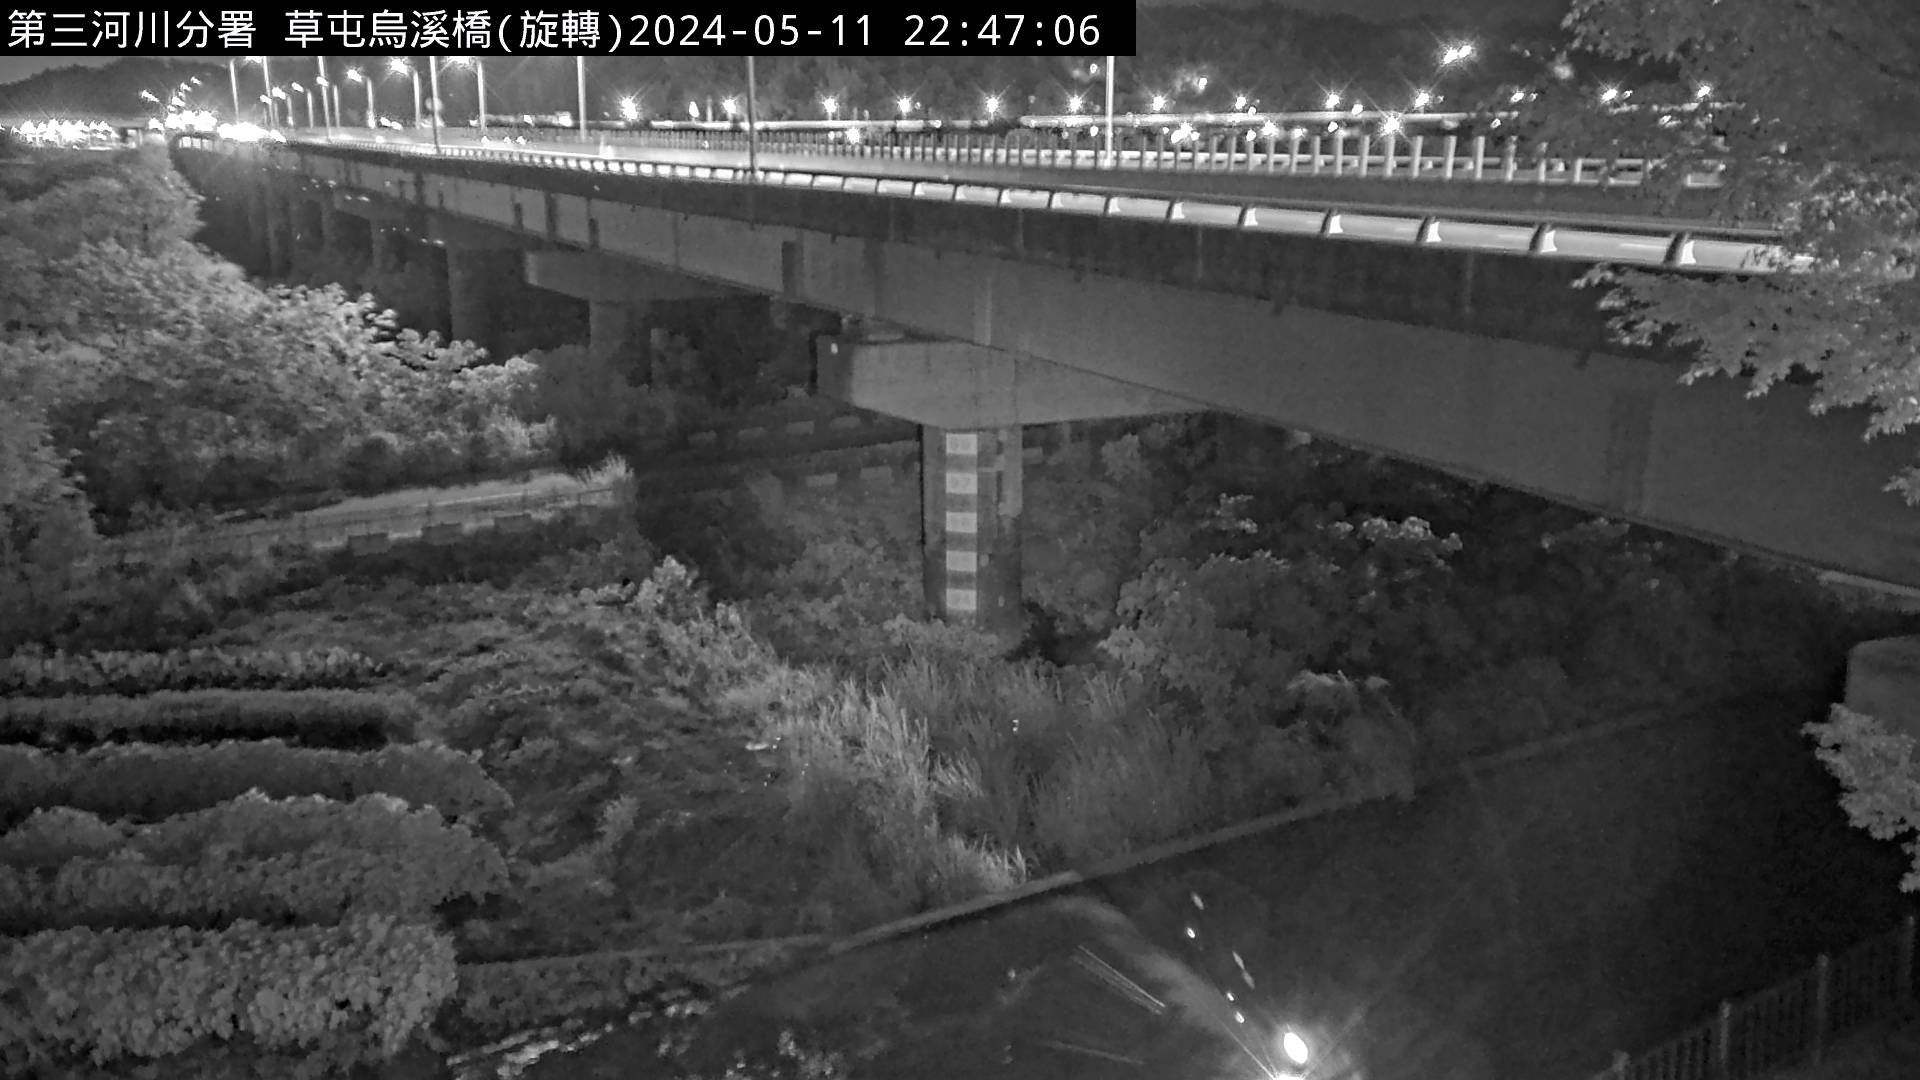 防災中心 烏溪橋 氣溫26.8度